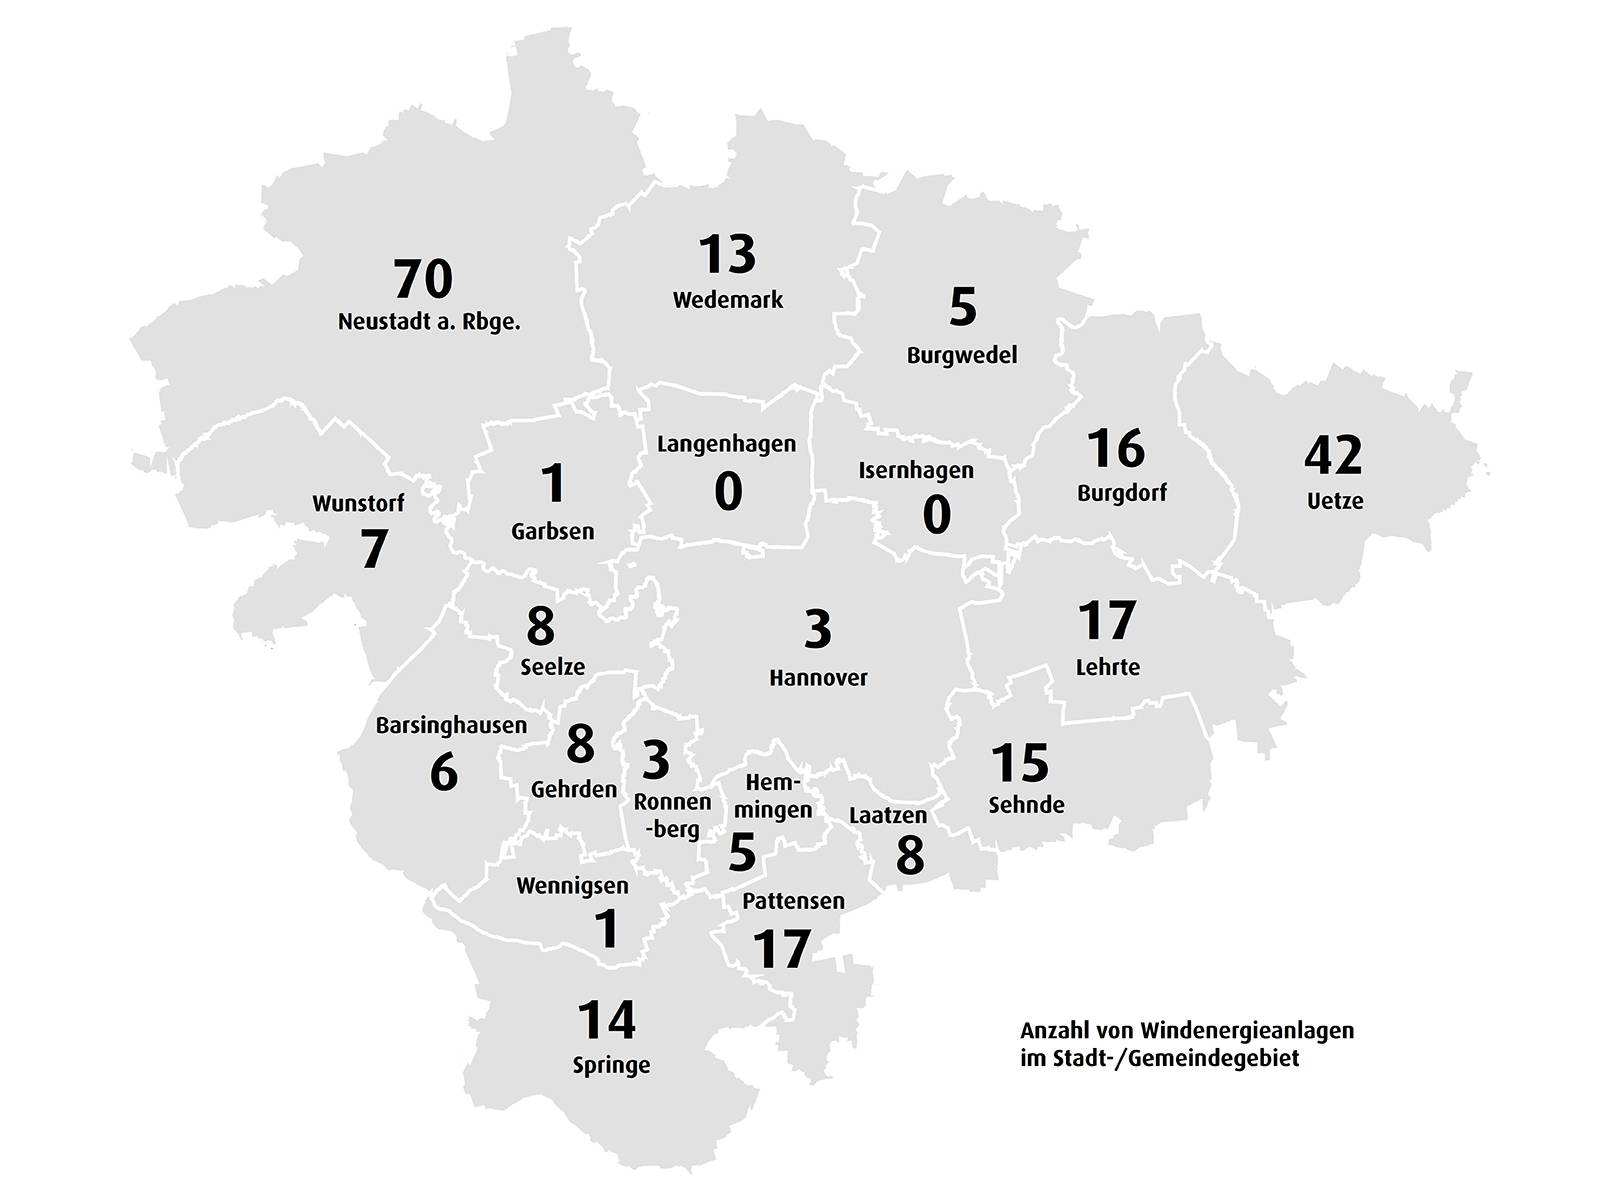 Schematische Karte der Kommunen der Region Hannover  auf der die Anzahl der Windenergie-Anlagen pro Kommune eingetragen ist